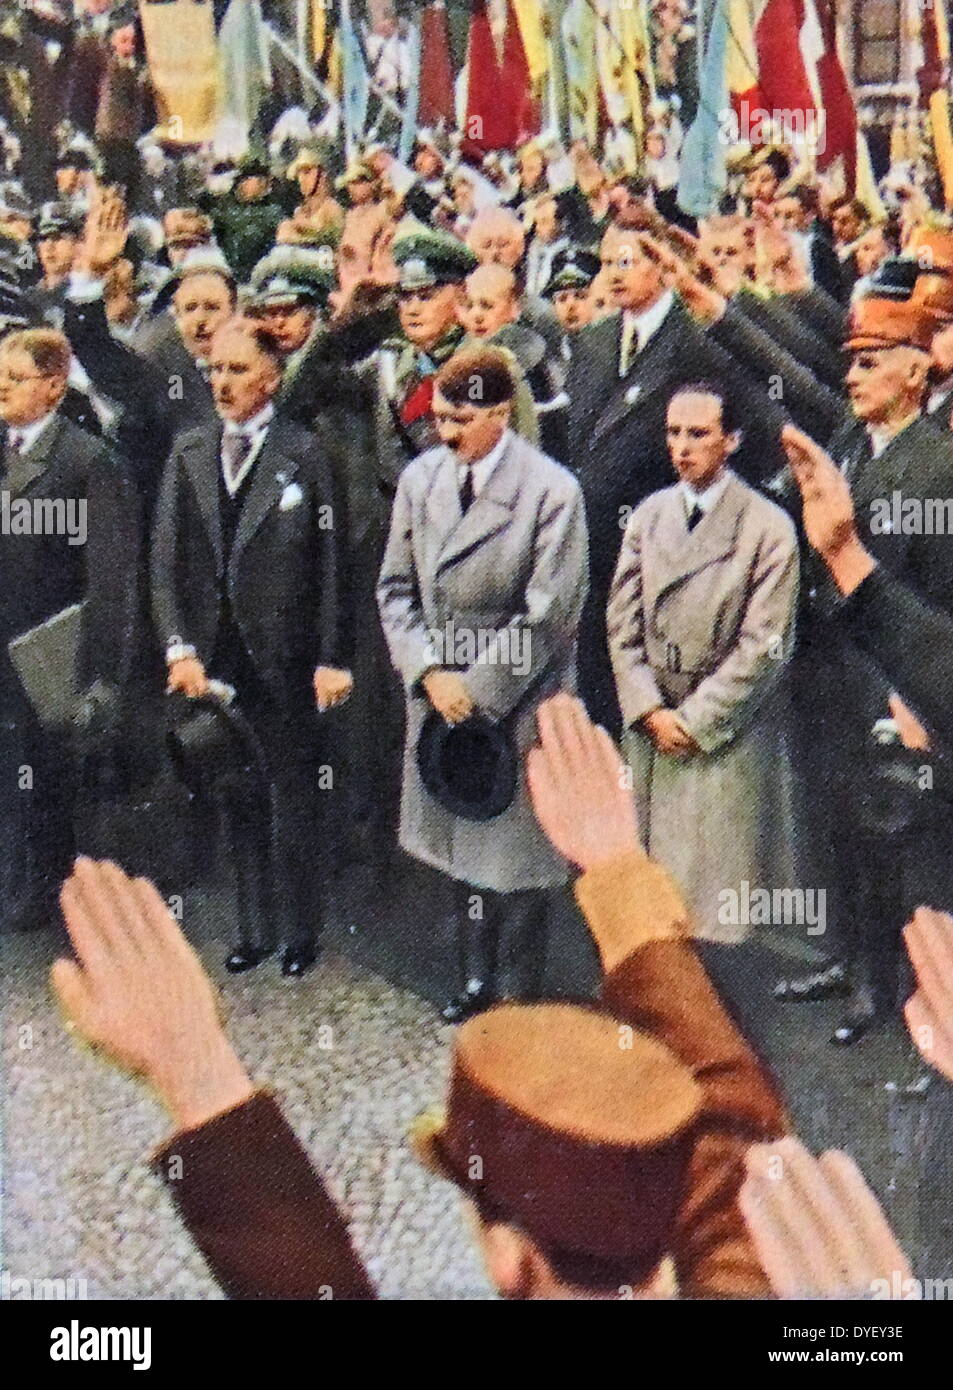 Vizekanzler Von Papen, Adolf Hitler und Josef Goebbels ca. 1933 Stockfoto